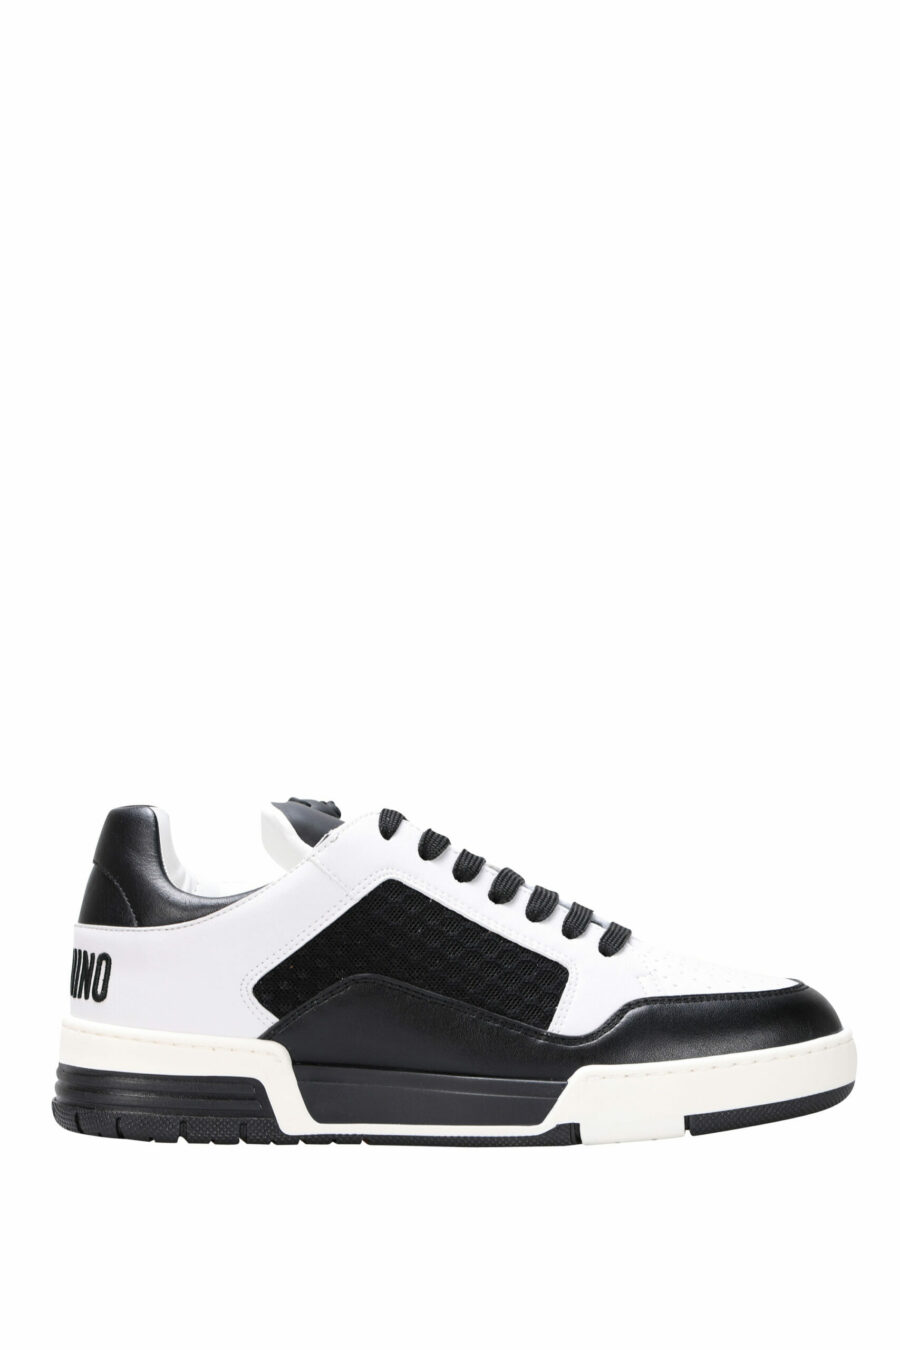 Chaussures bicolores noires et blanches "kevin40" avec mini-logo - 8054388024457